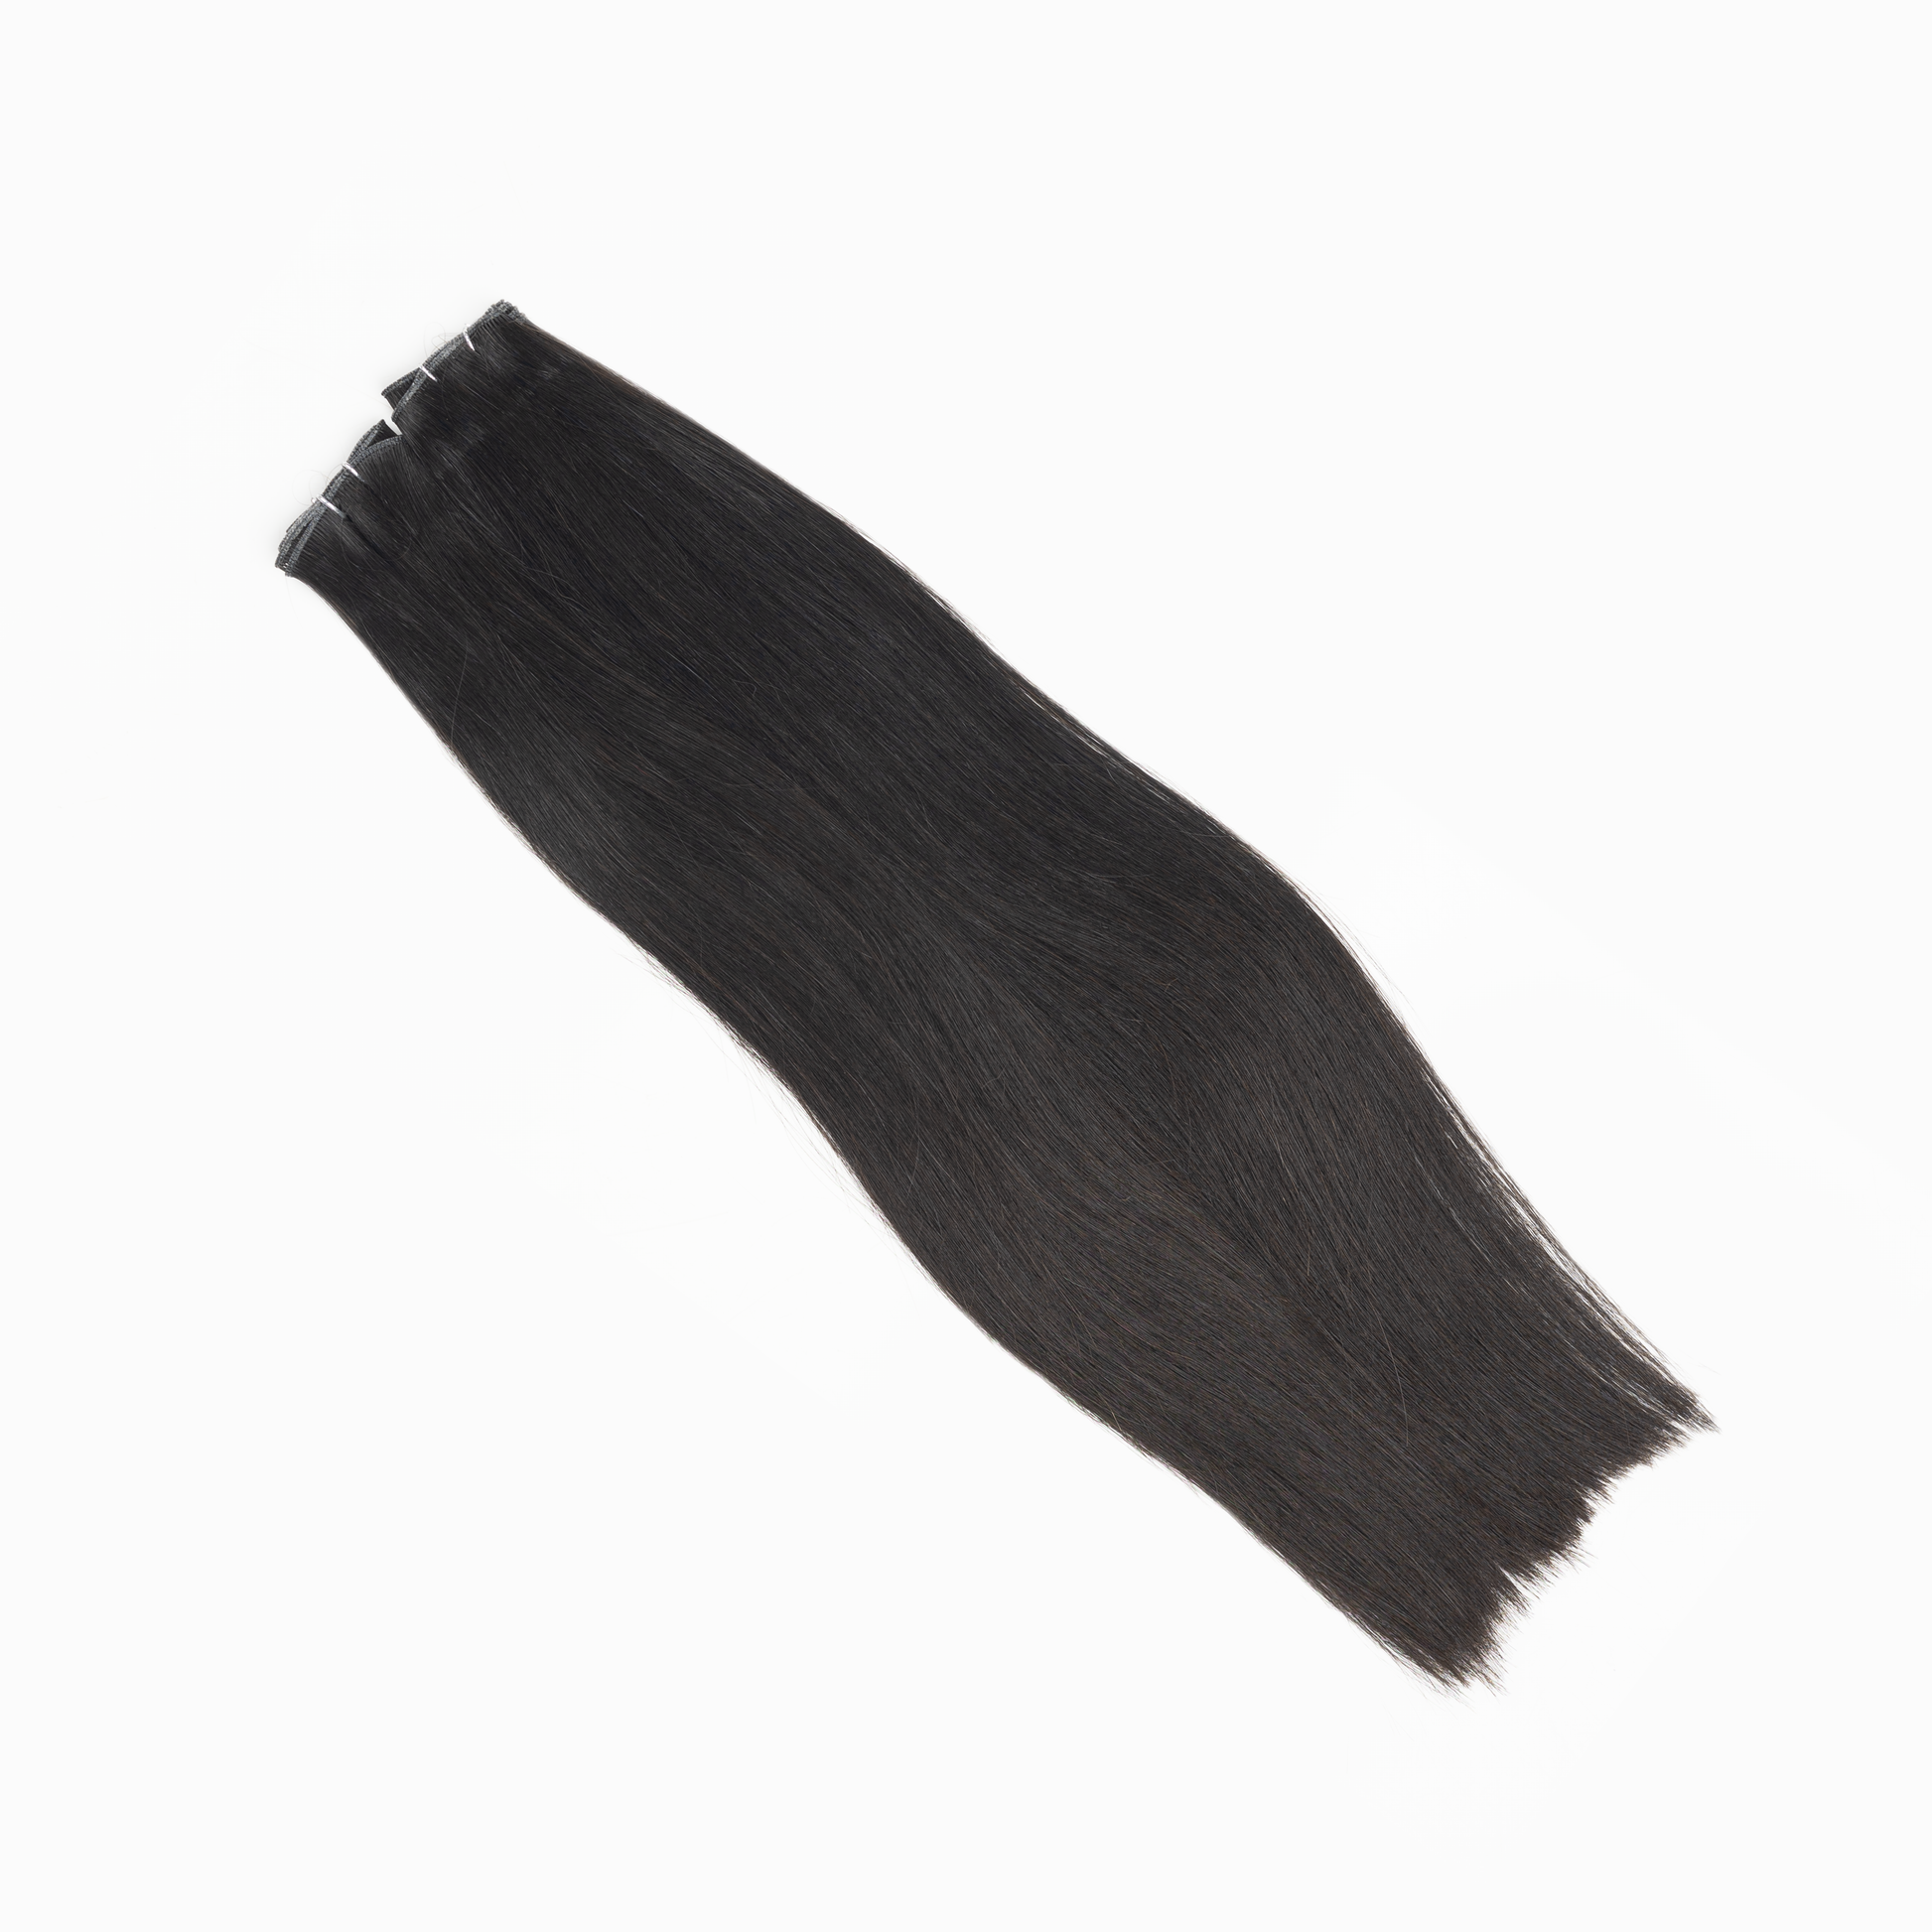 Genius Weft Hair Extensions  HairOriginals 20 Inch 50 Natural Black